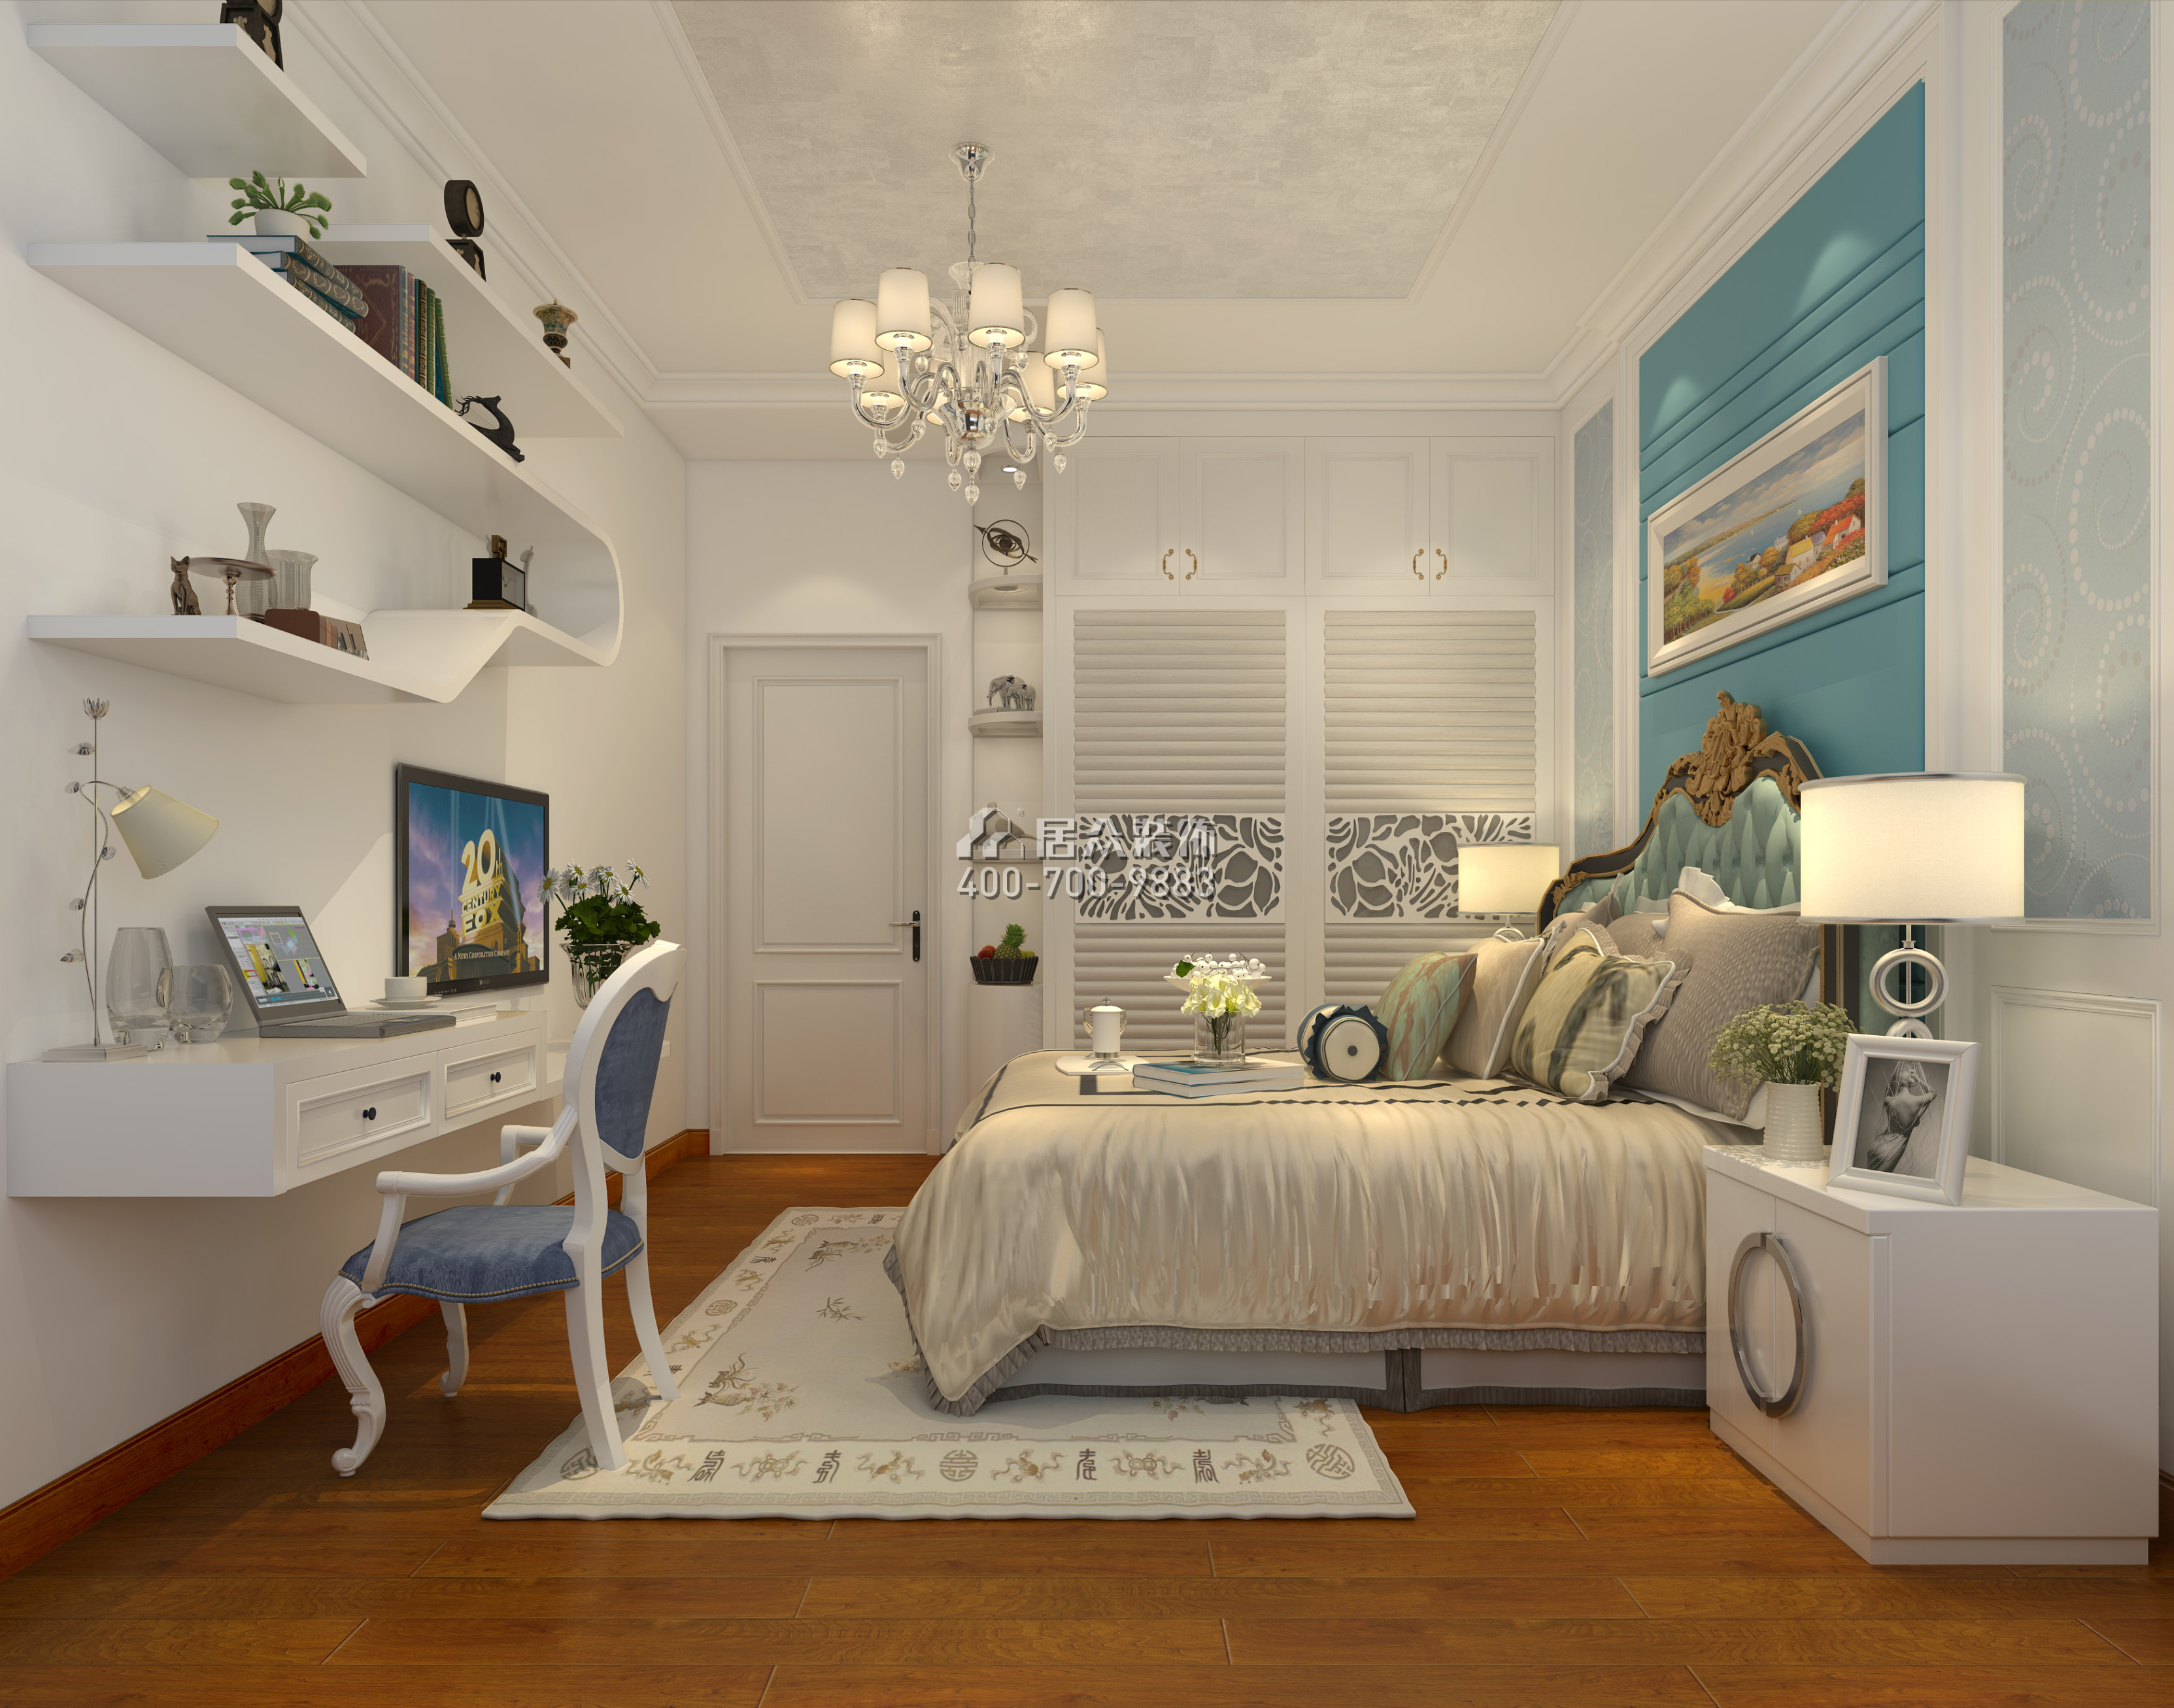 懿峰雅居244平方米欧式风格平层户型卧室装修效果图